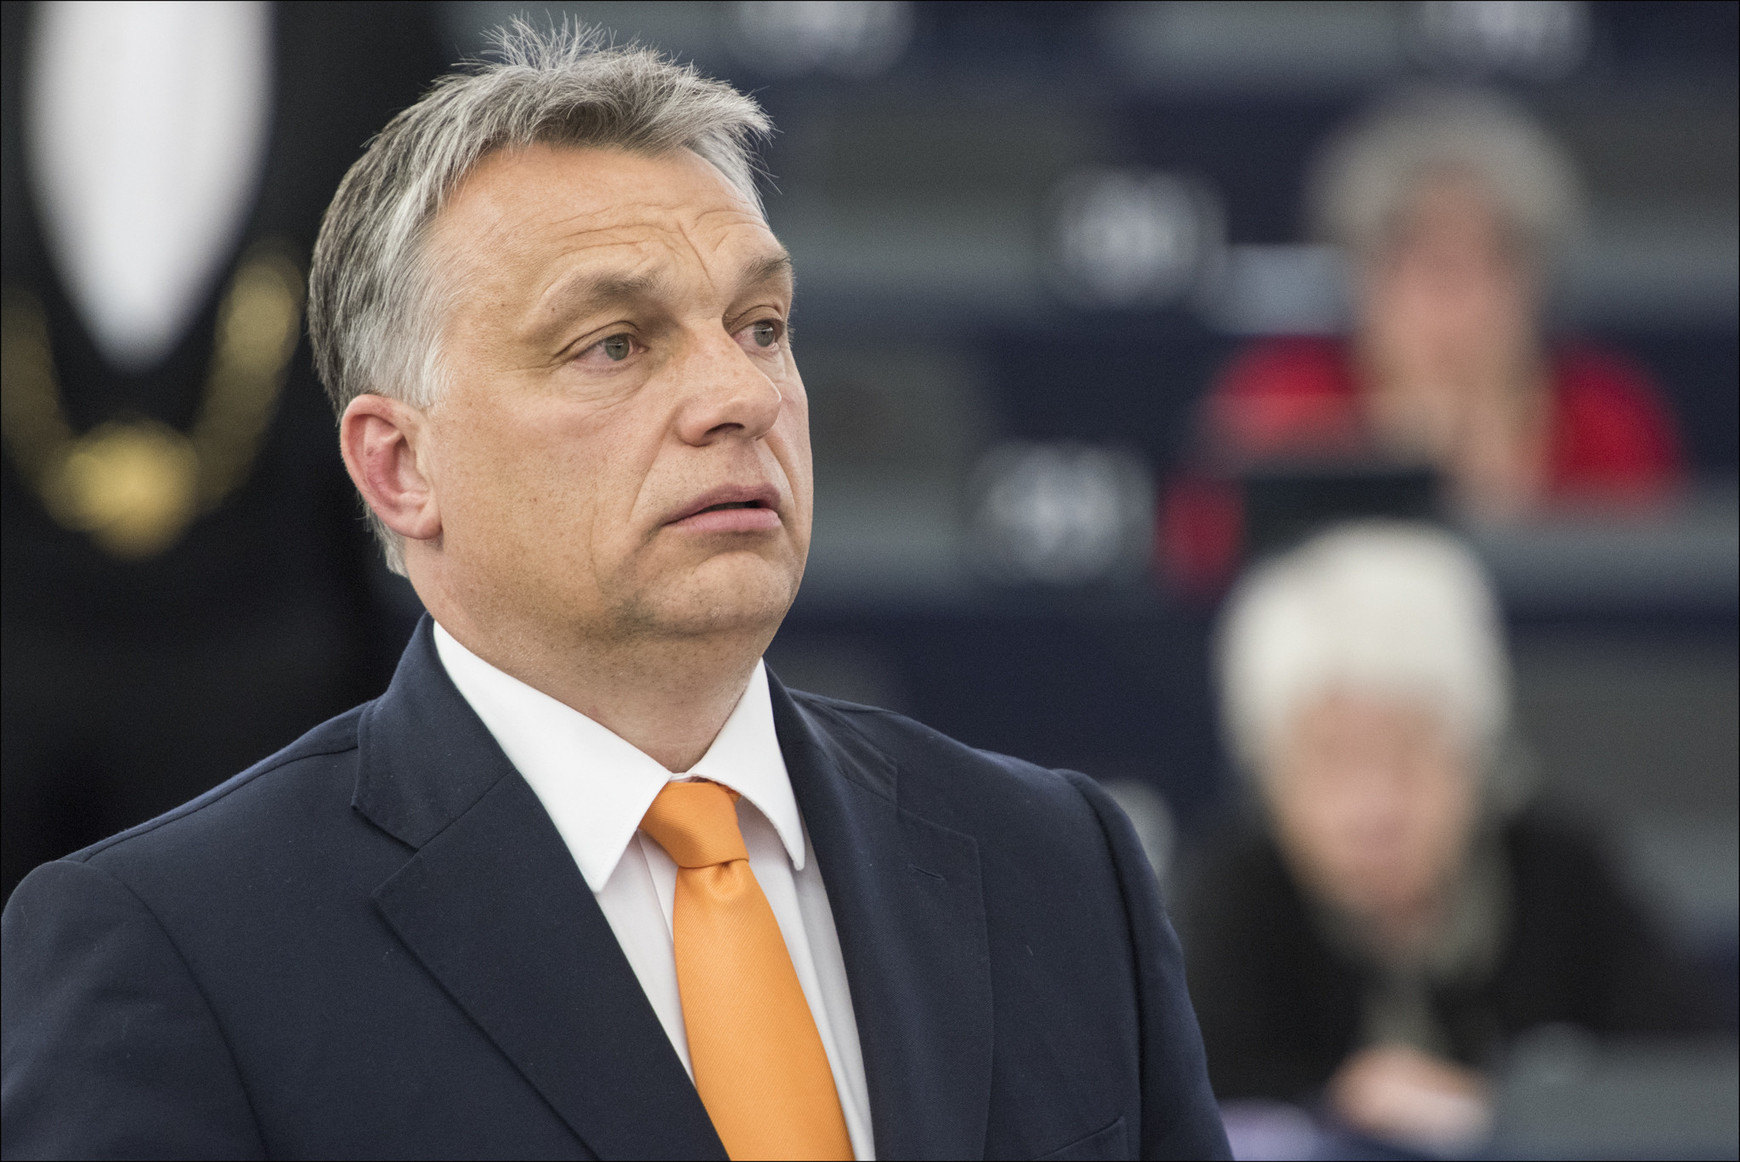 @European Parliament Viktor Orbán défie Bruxelles